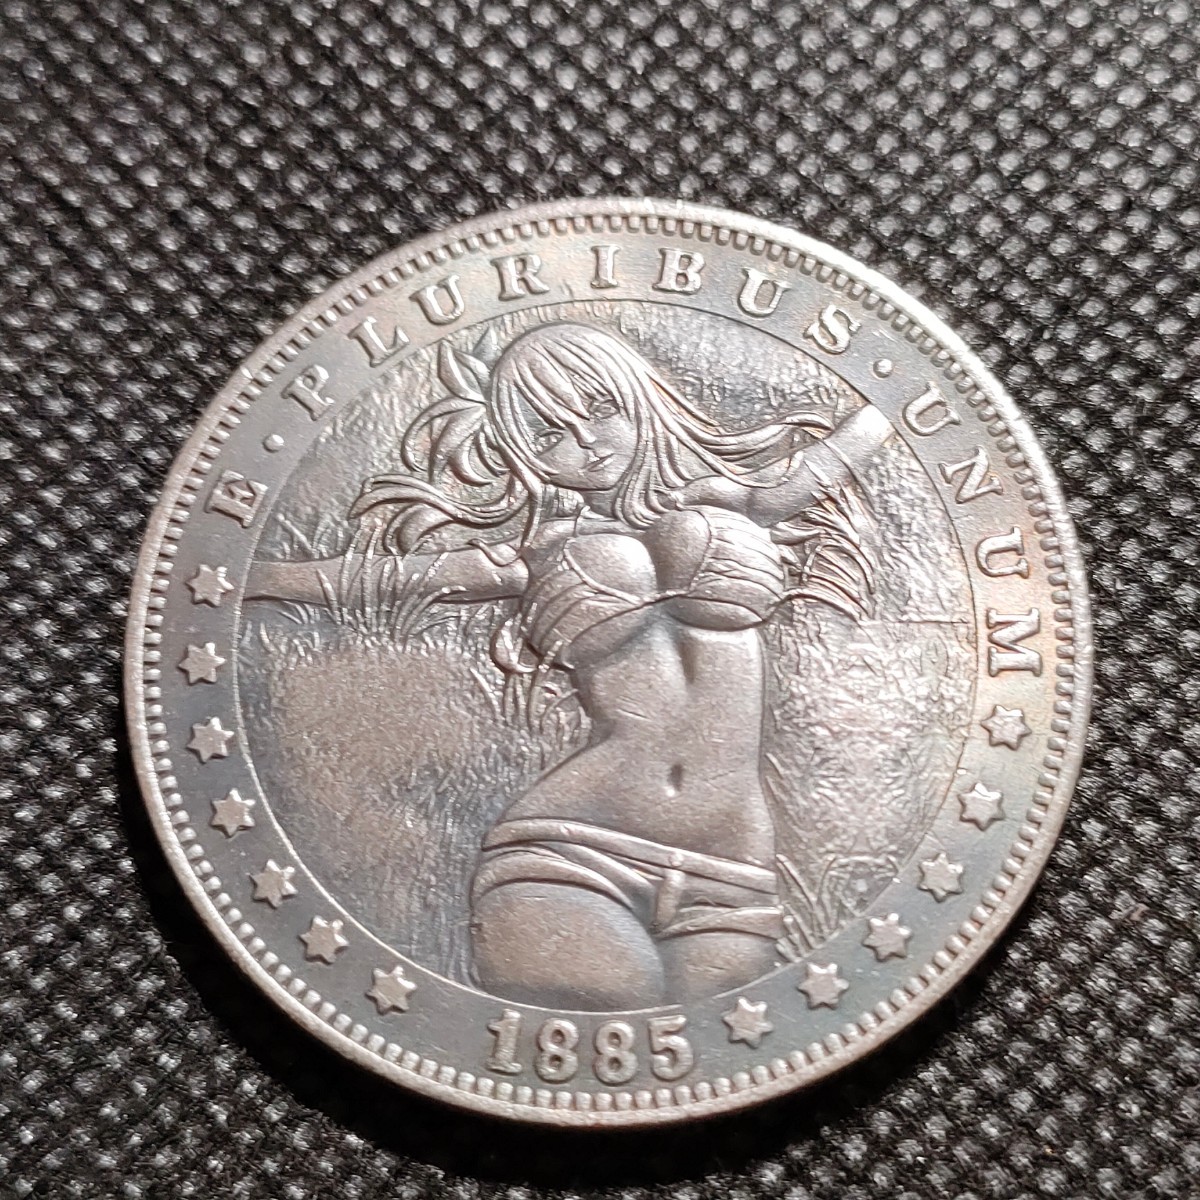 4506 アメリカ古銭 ルンペン 約38mm イーグル チャレンジコイン コイン アンティーク ホーボーの画像1